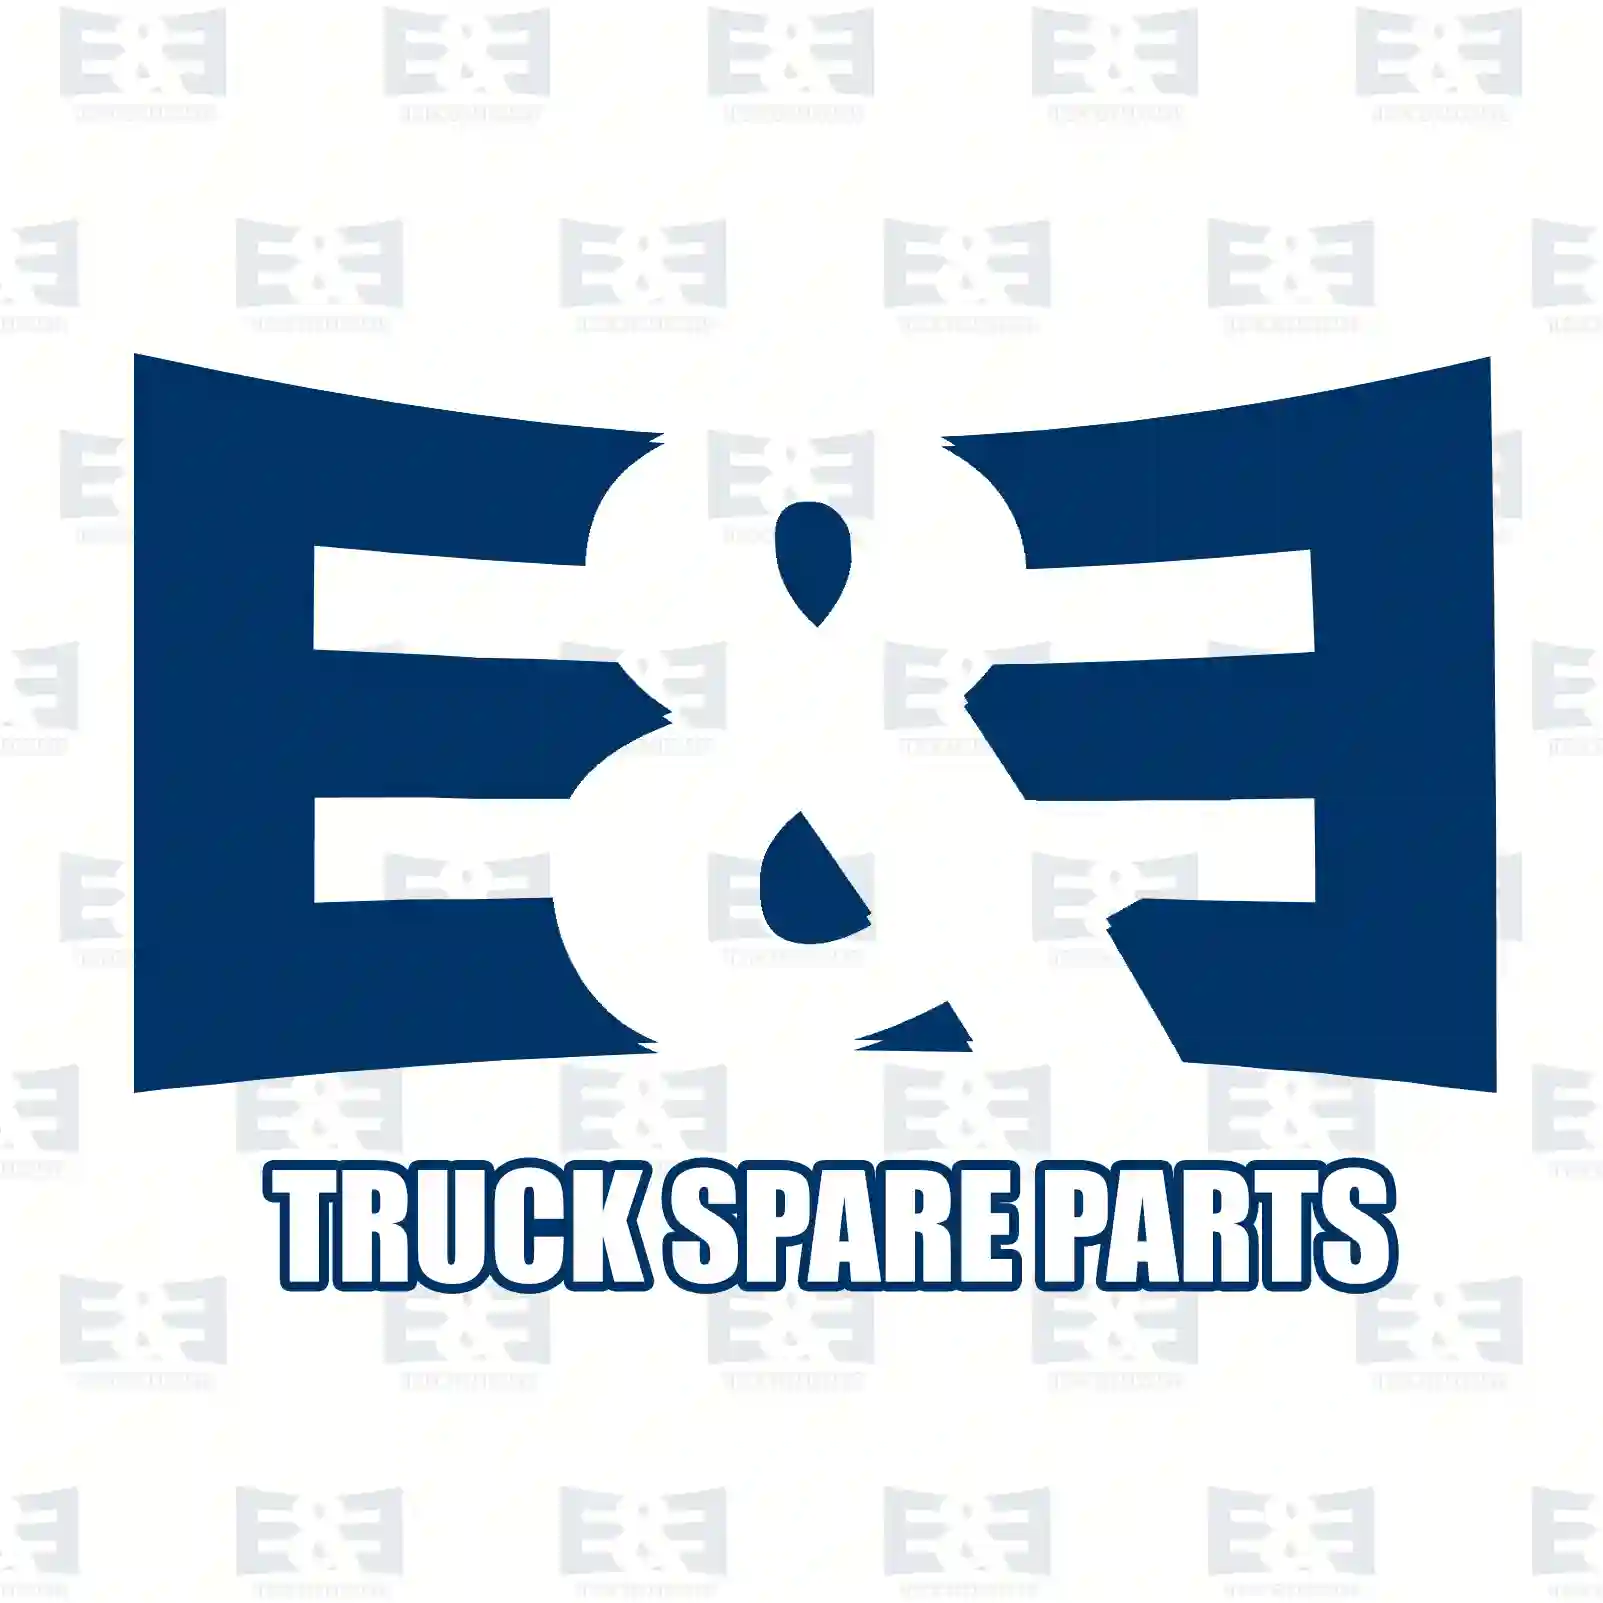 NOx Sensor, 2E2299609, 22219276, 22315986, 22827992 ||  2E2299609 E&E Truck Spare Parts | Truck Spare Parts, Auotomotive Spare Parts NOx Sensor, 2E2299609, 22219276, 22315986, 22827992 ||  2E2299609 E&E Truck Spare Parts | Truck Spare Parts, Auotomotive Spare Parts